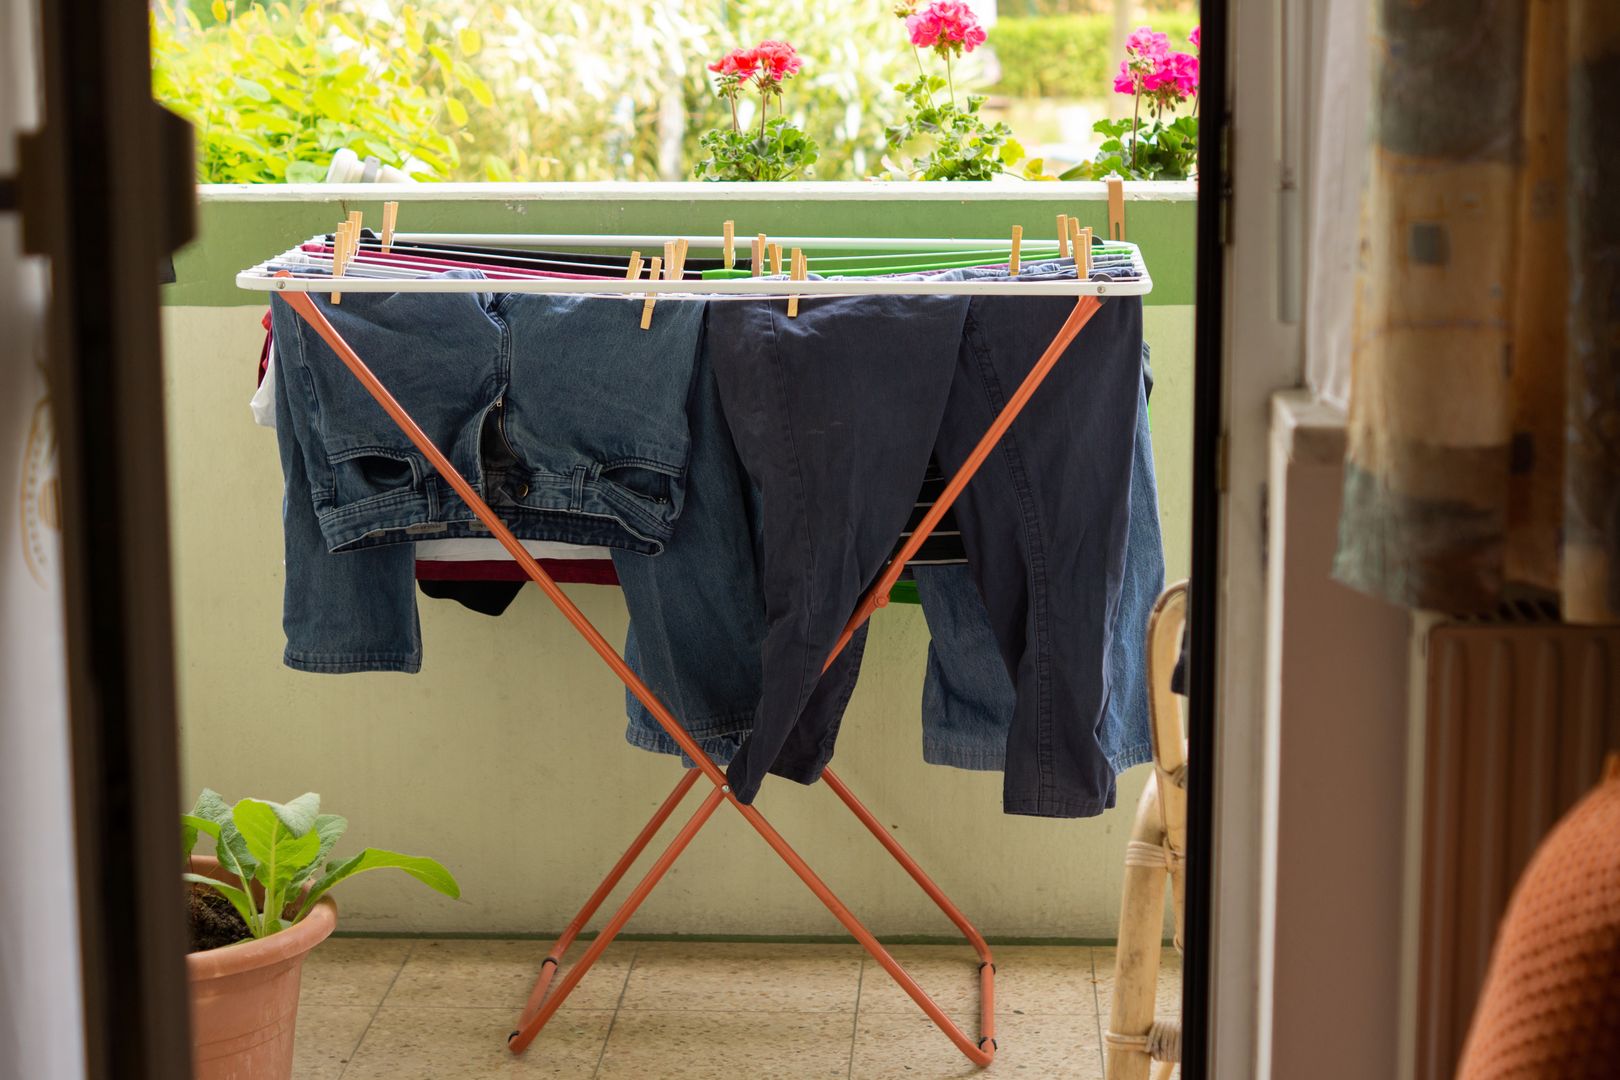 Suszysz pranie na balkonie? Lepiej nie rób tego w taki sposób